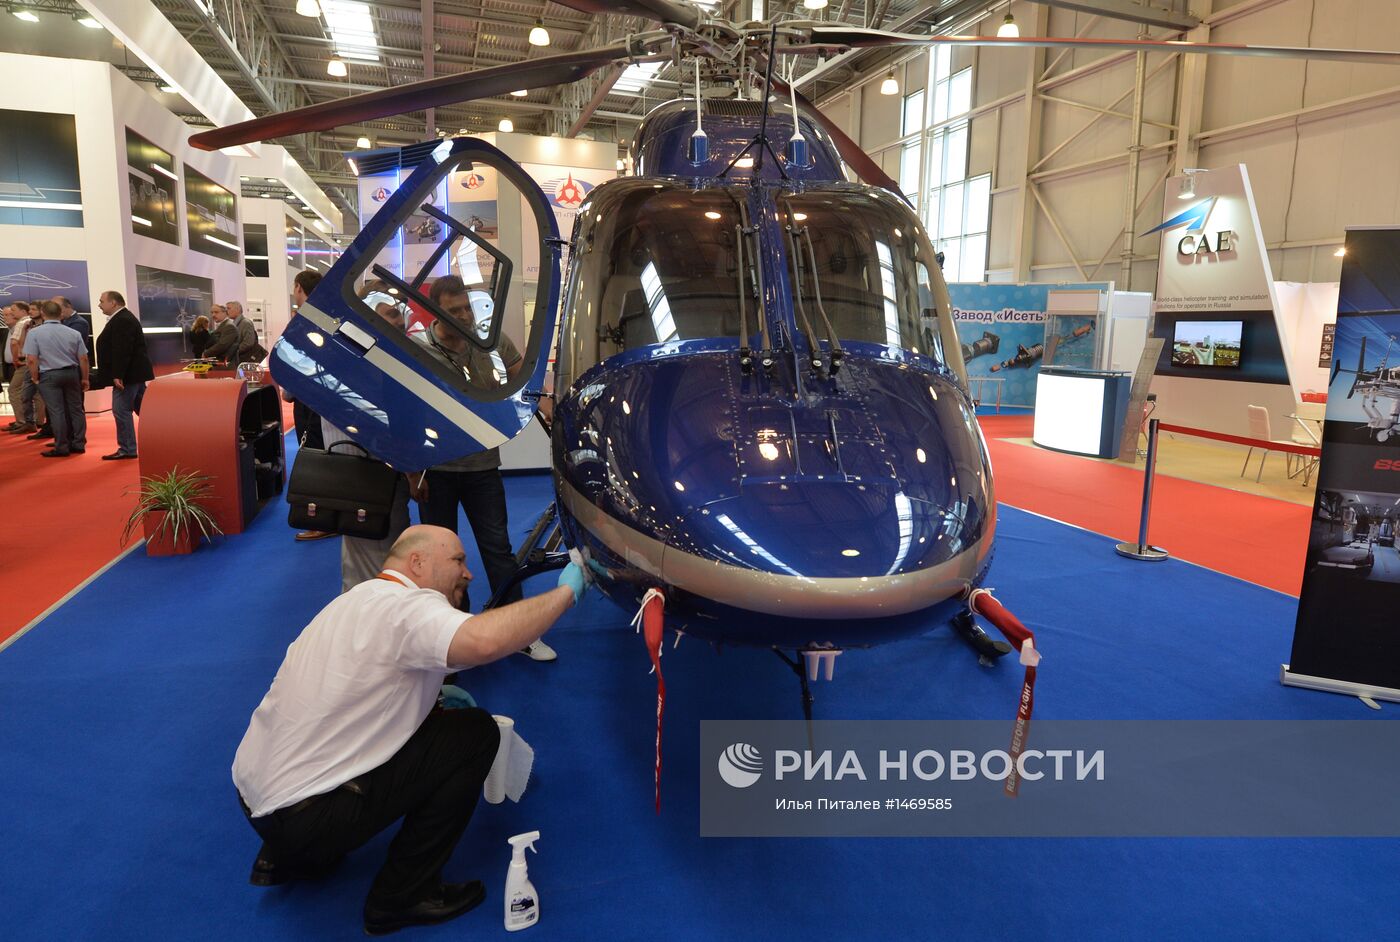 Выставка вертолетной индустрии HeliRussia 2013